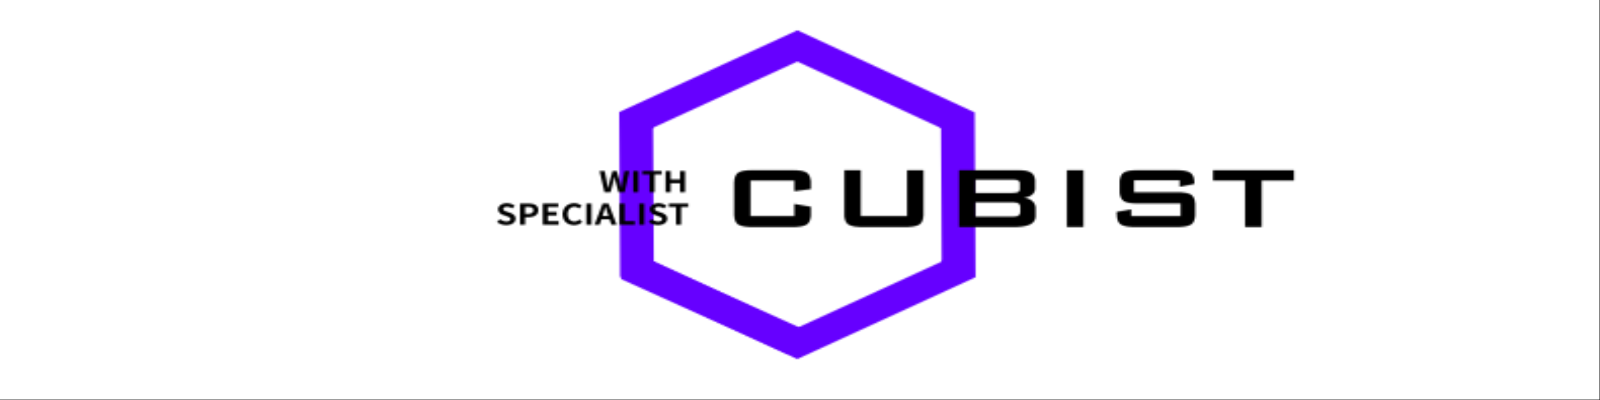 Cubist Co.,Ltd. Main Image